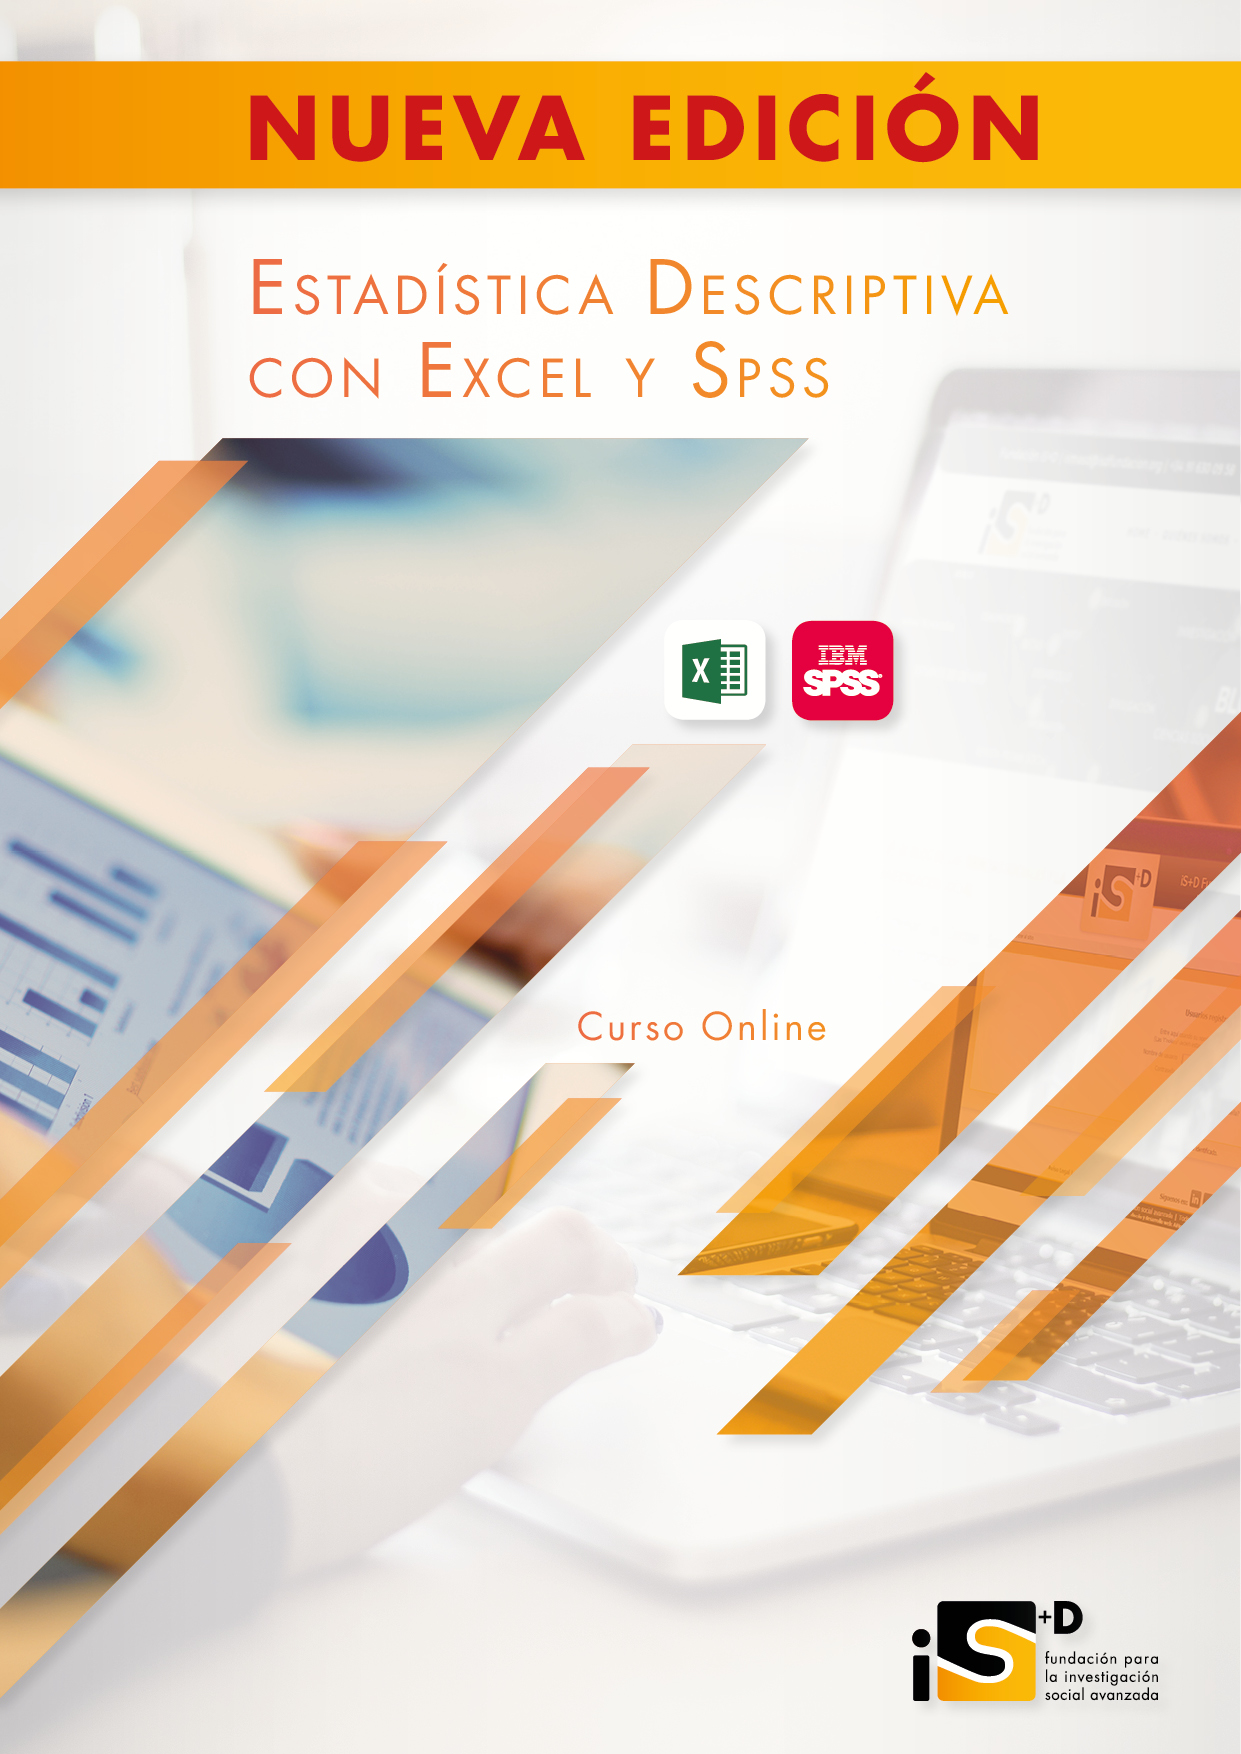 Curso Online Especializado y Certificado: Estadística Descriptiva con Excel y SPSS.